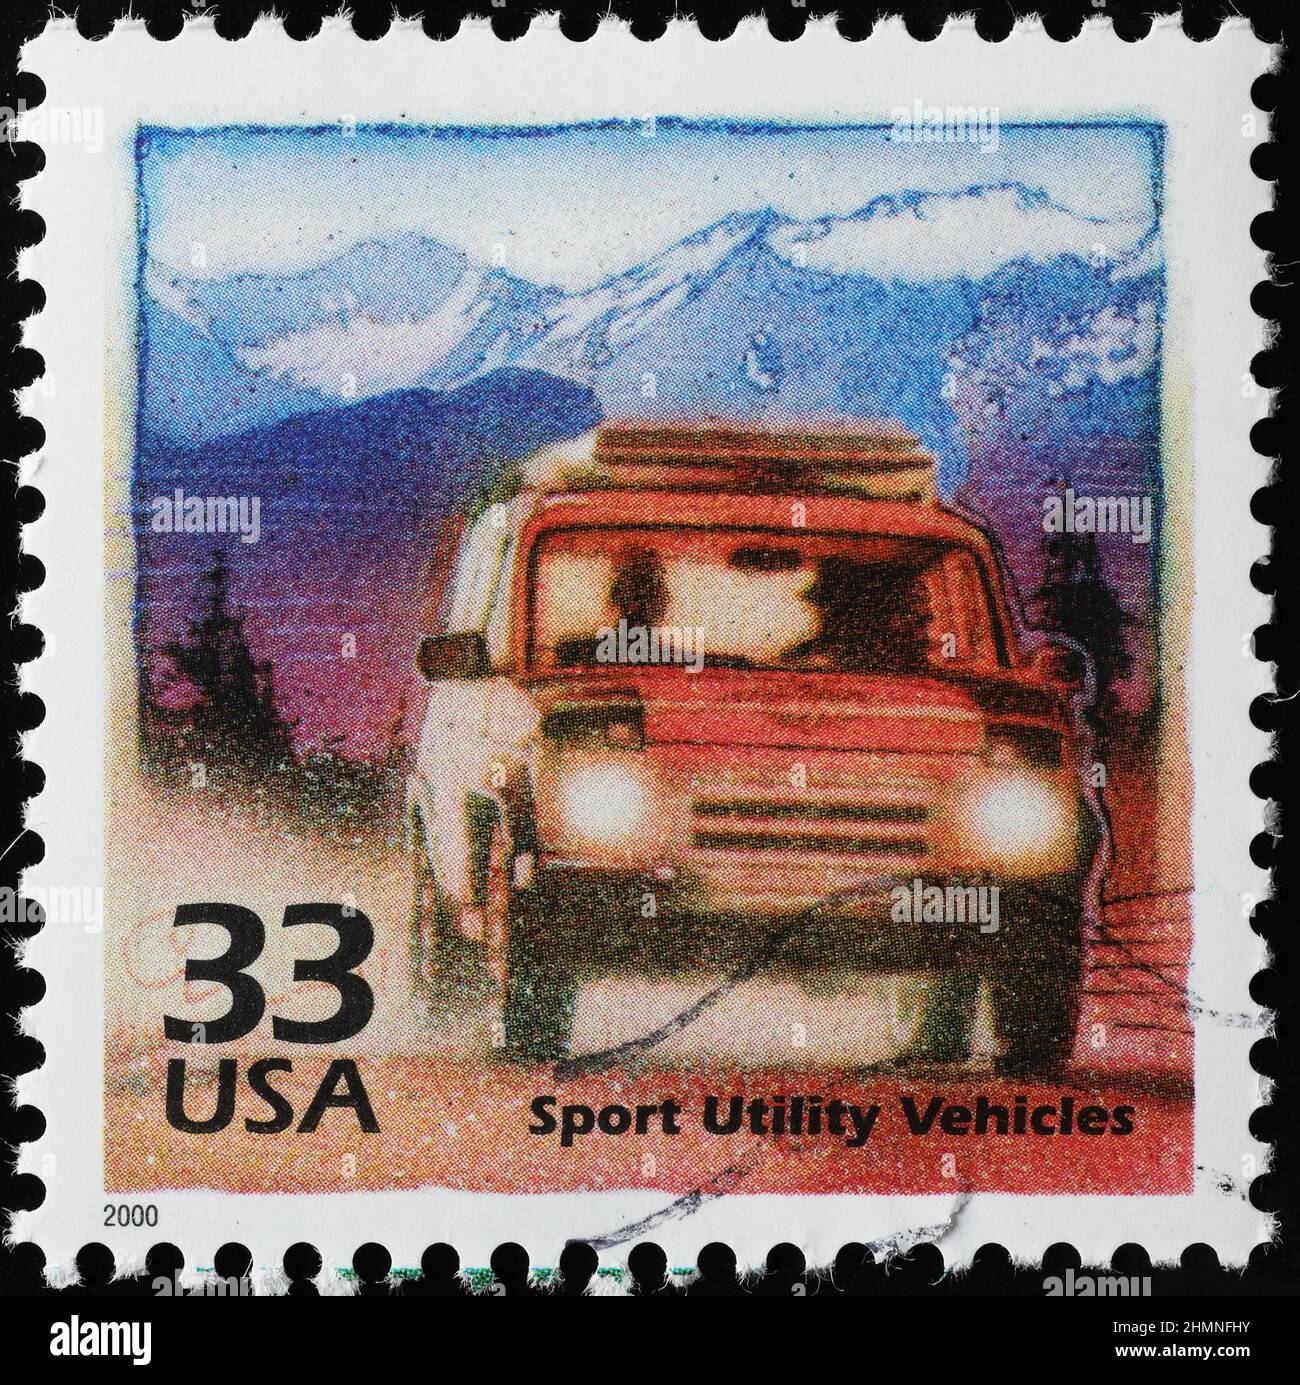 Les véhicules utilitaires sport sont célébrés sur le timbre américain Banque D'Images